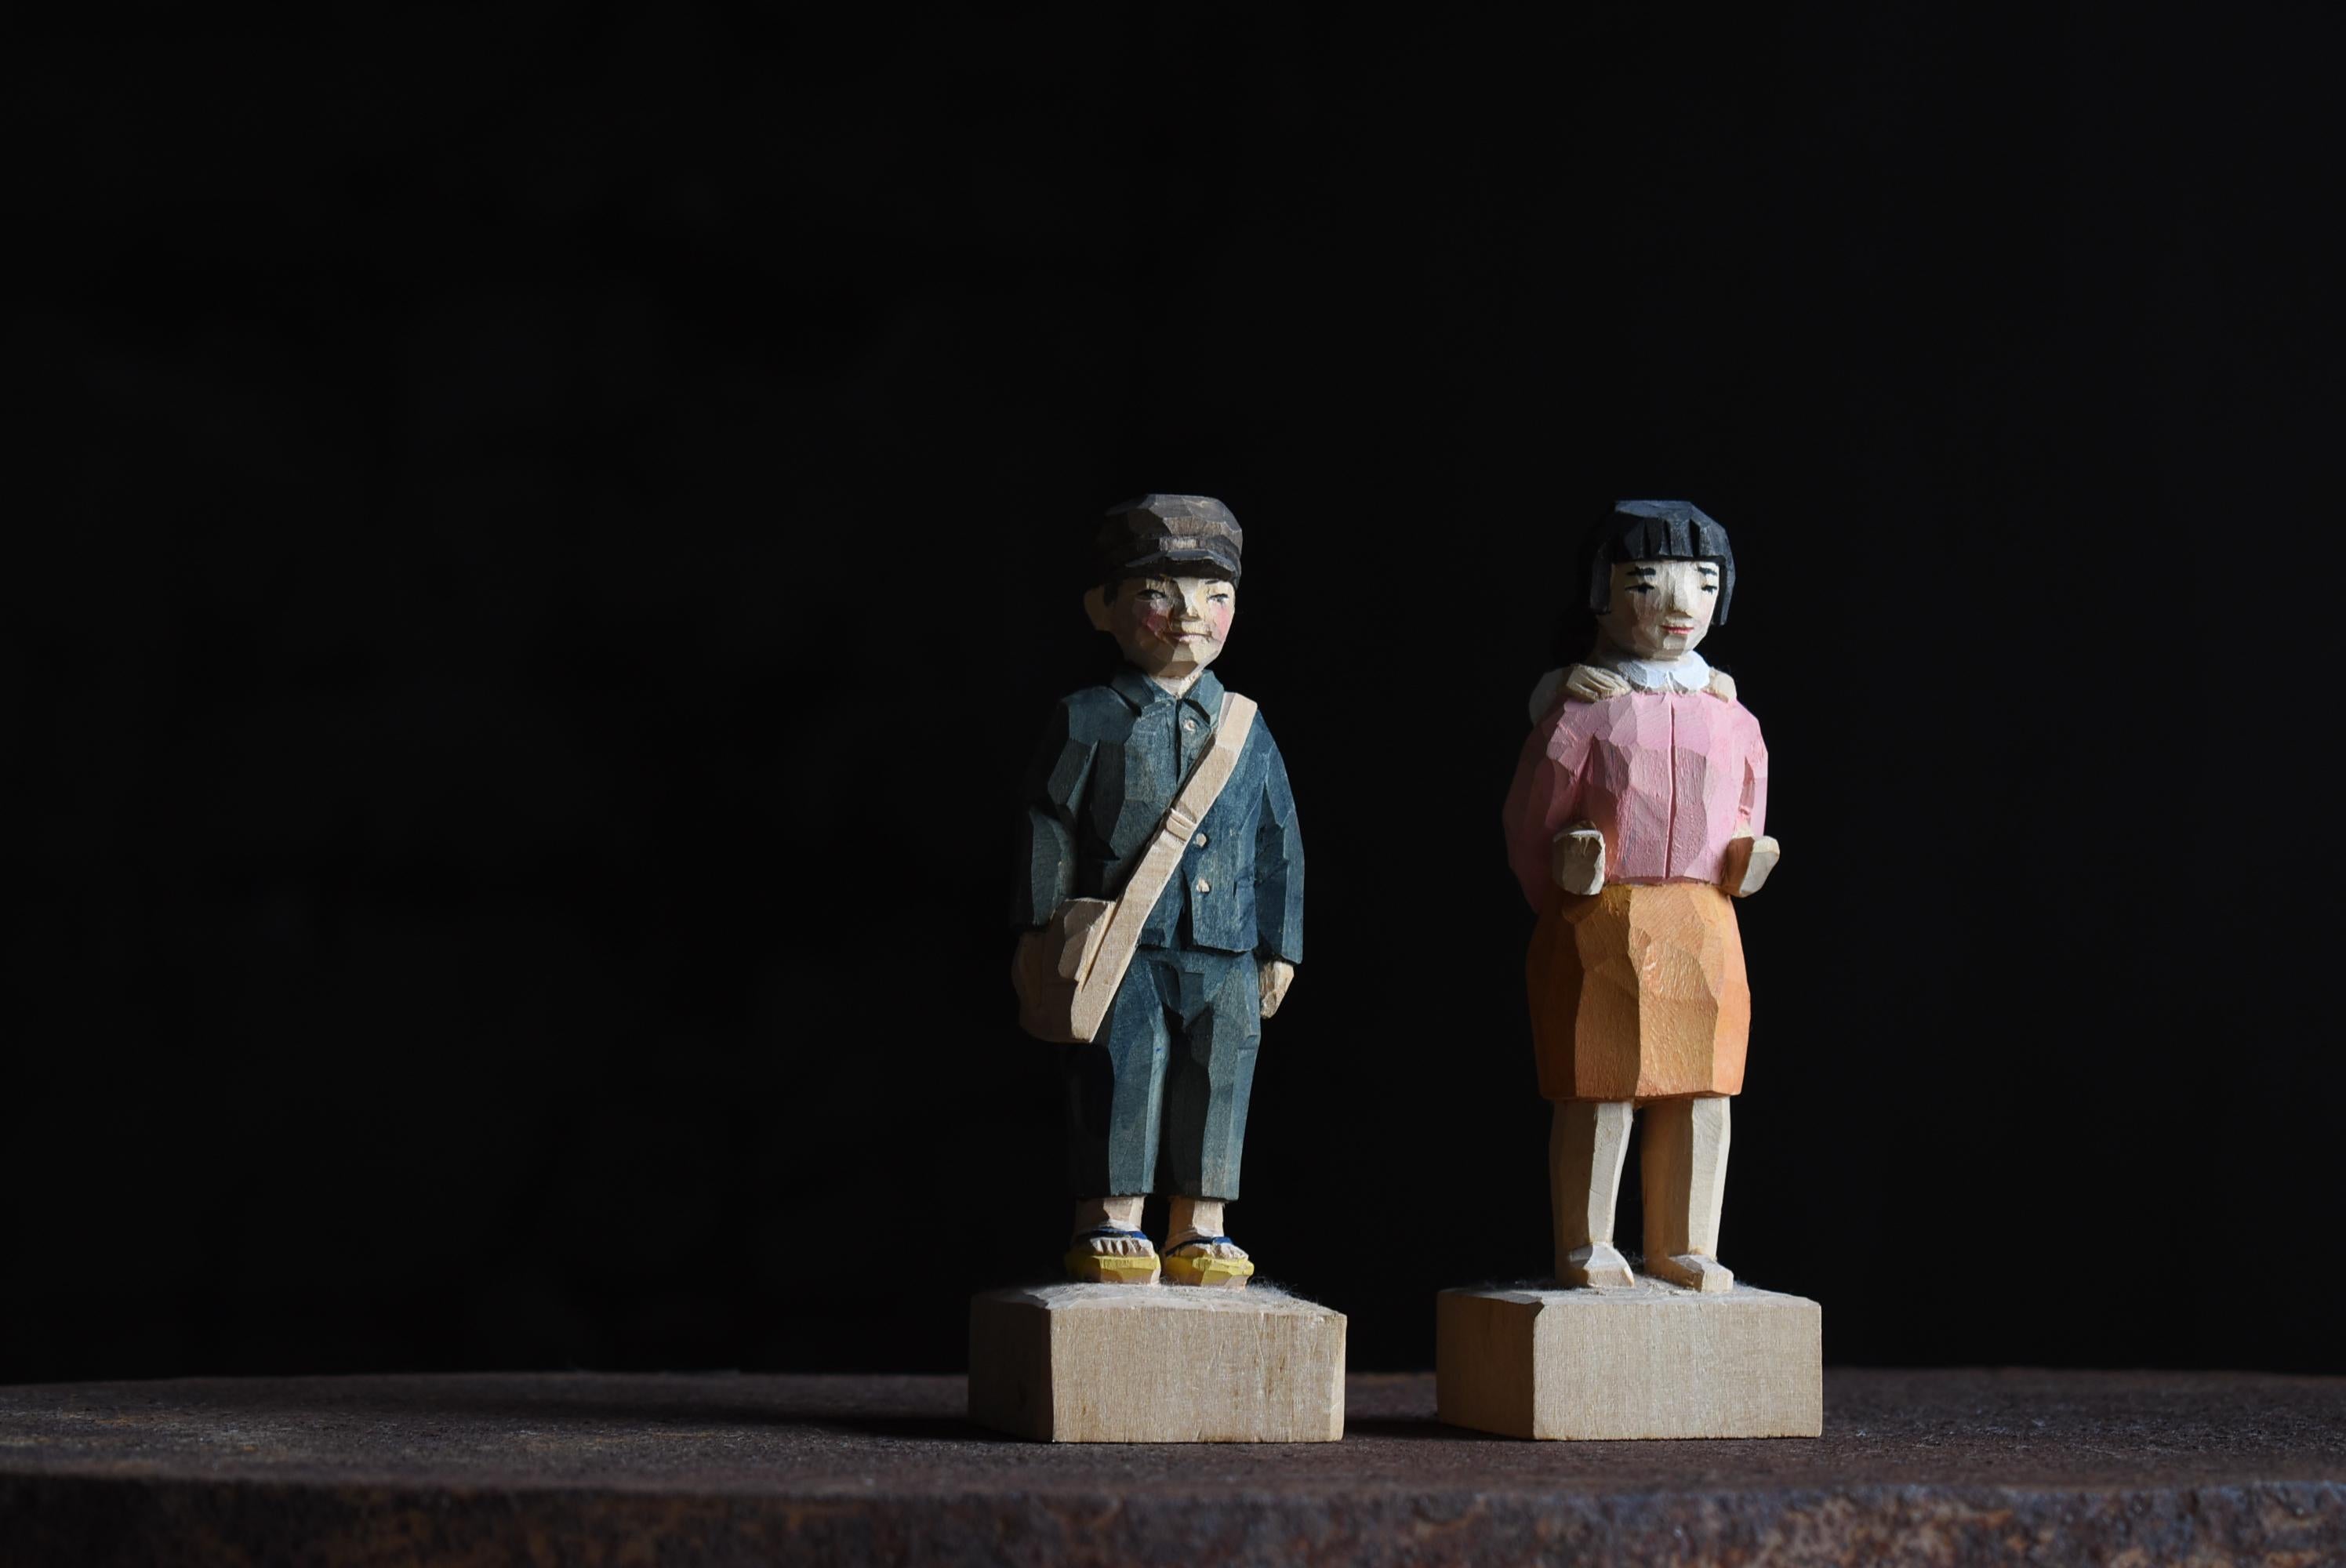 Dies ist ein altes geschnitztes Holz Volkskunst in Japan gemacht.
Sie sind japanischen Kindern aus der Kriegszeit nachempfunden.
Dies ist eine Holzschnitzerei aus der mittleren Showa-Periode (1940er-1960er Jahre).

Die Schnitzerei ist kühn und die